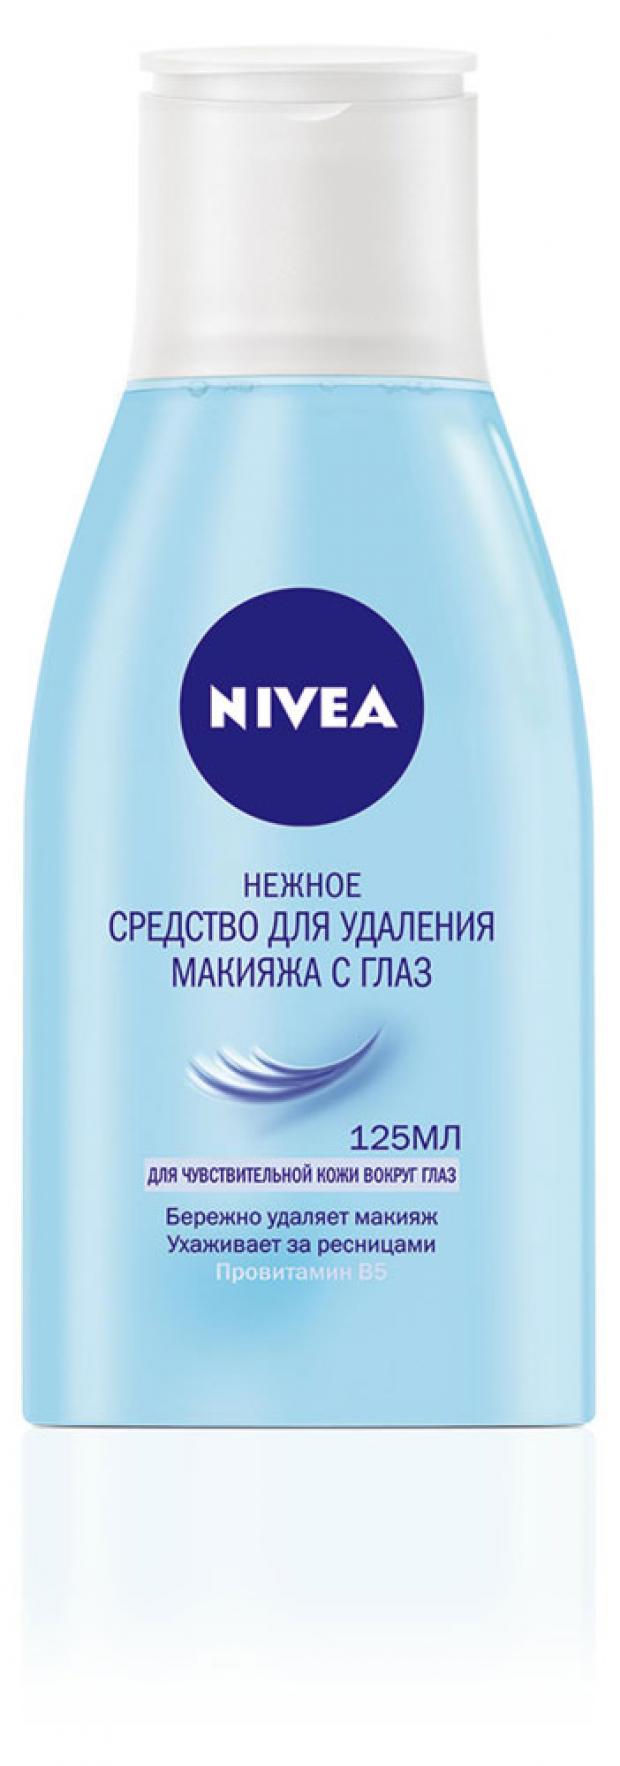 Средство для снятия макияжа с глаз Nivea, 125 мл nivea средство для снятия макияжа с глаз двойной эффект